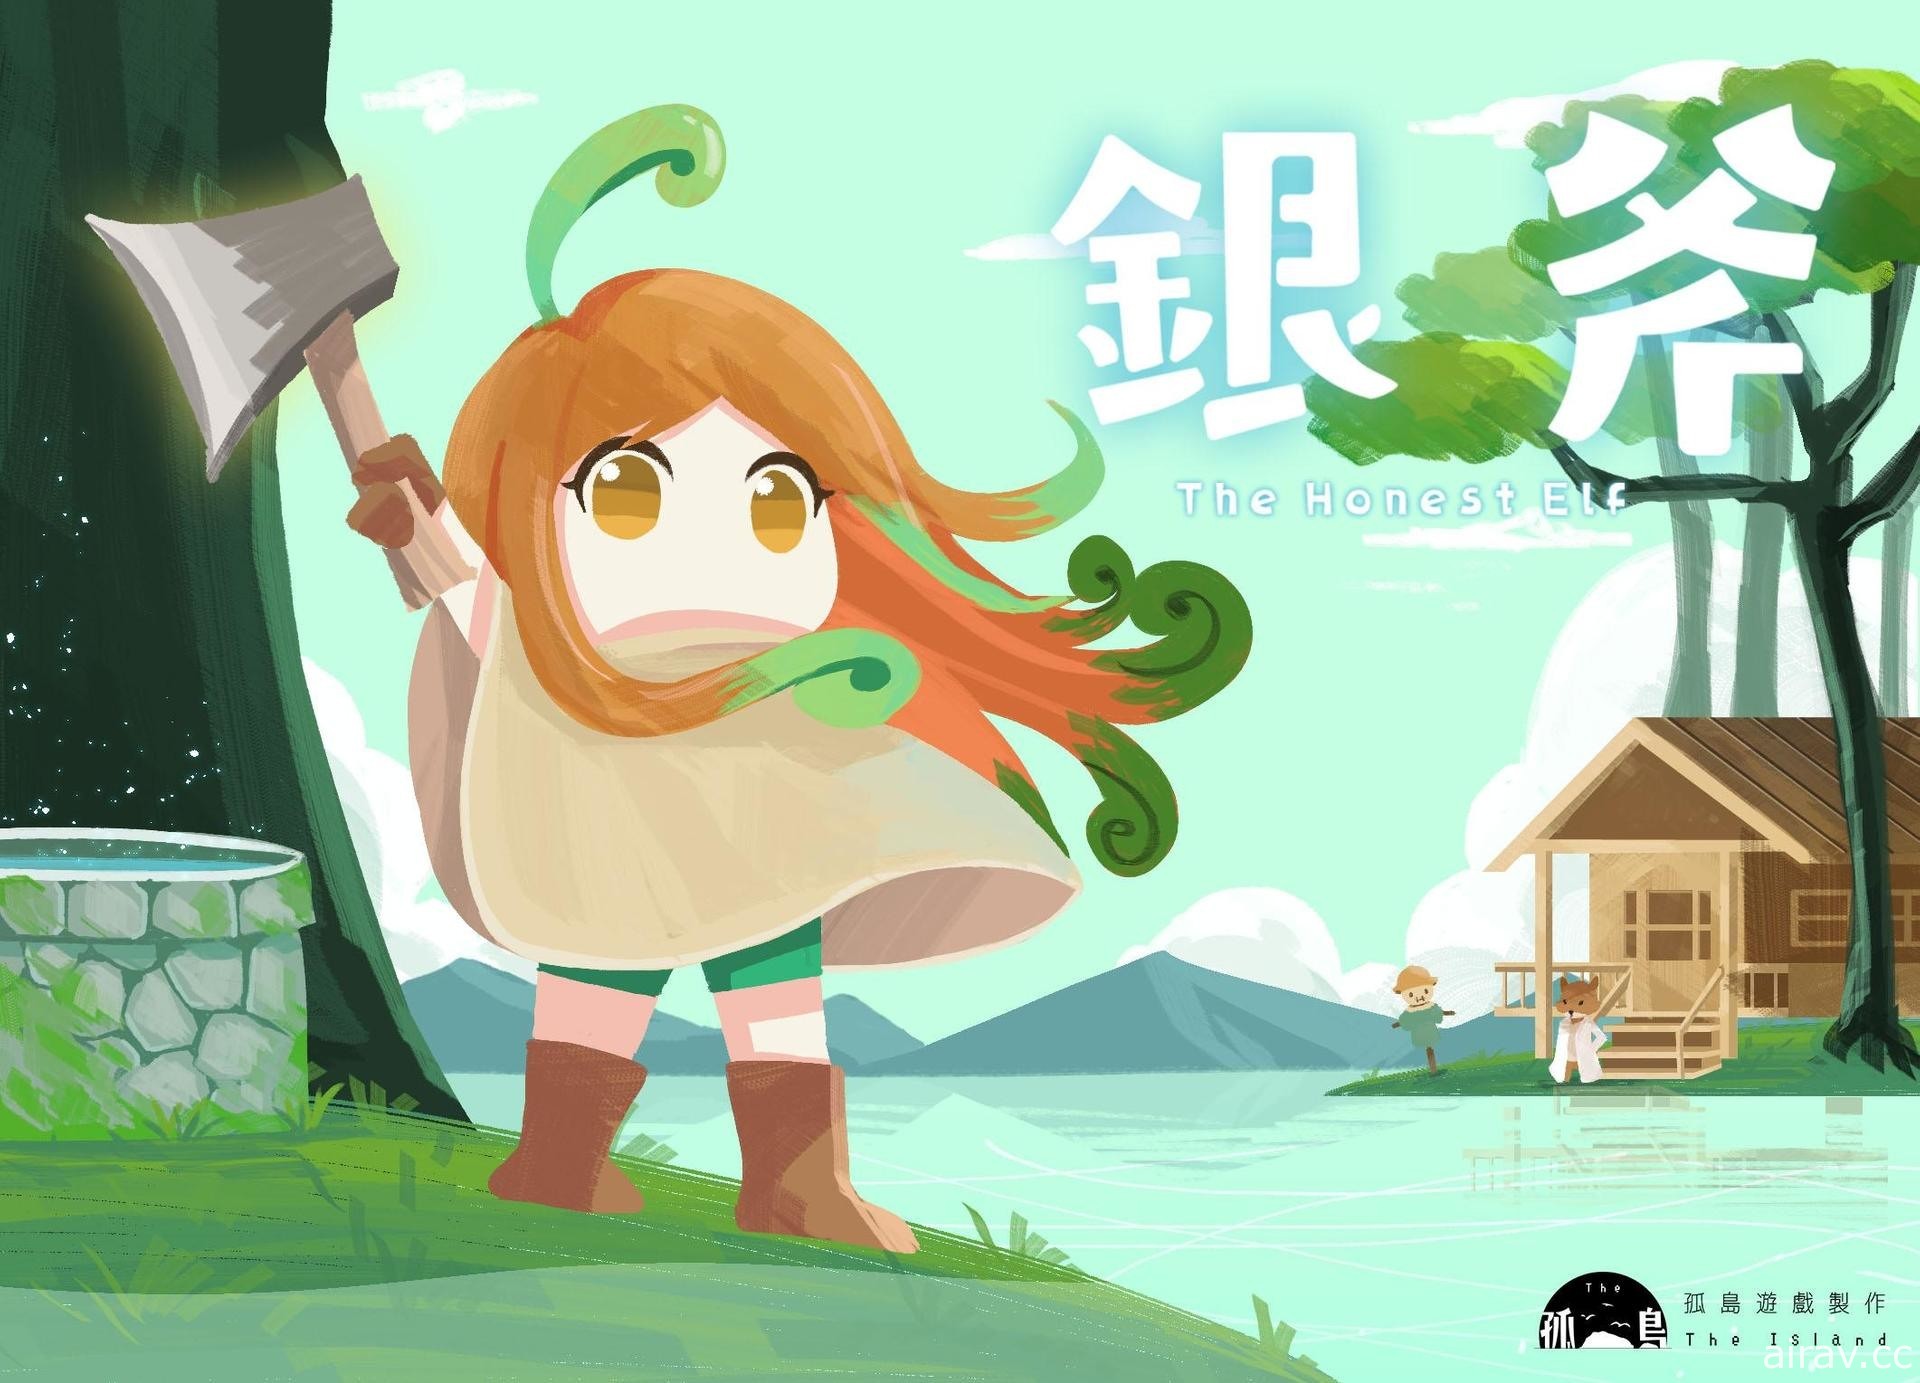 台湾独立开发团队新作《银斧》首度推出体验版 近期将展开募资